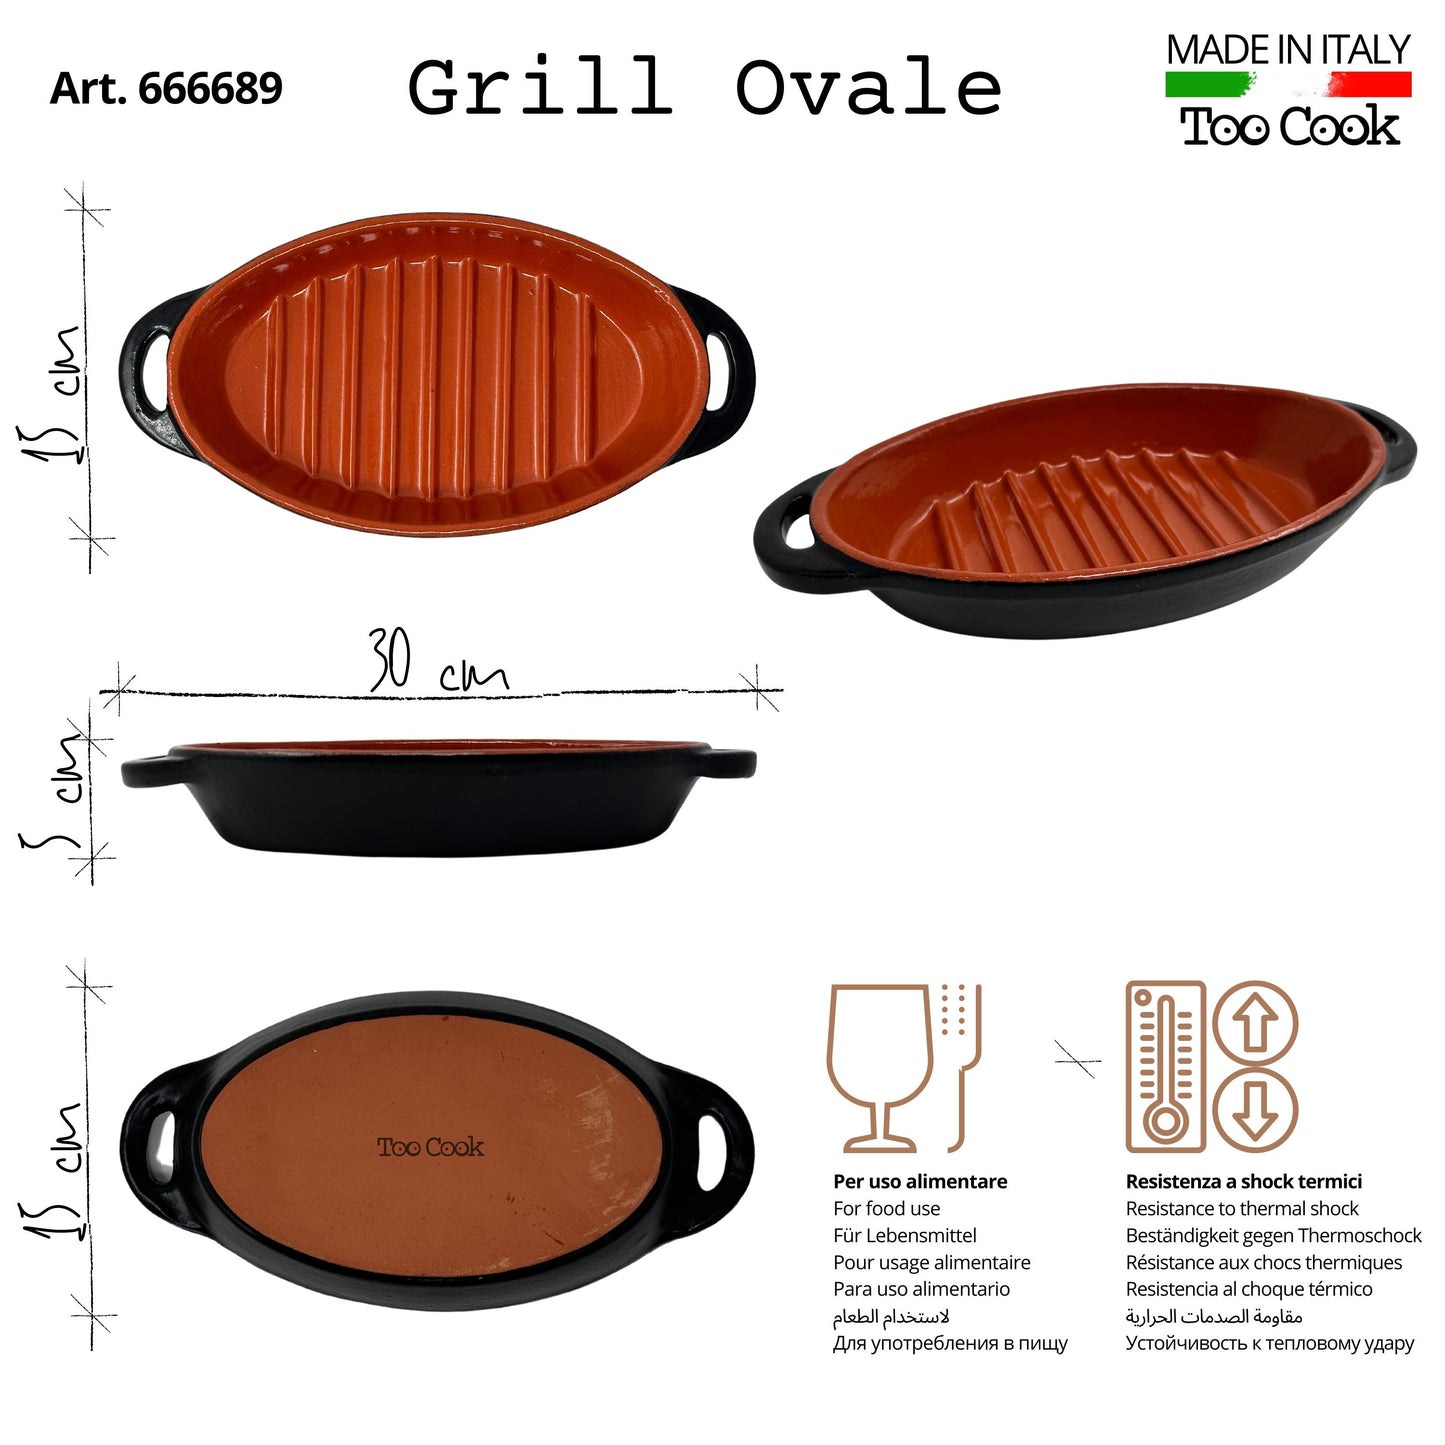 Toocook Grill Me piastra ovale in Terracotta per Cucina Naturale Senza Grassi Gusto Unico Senza alterare Le proprietà del Cibo